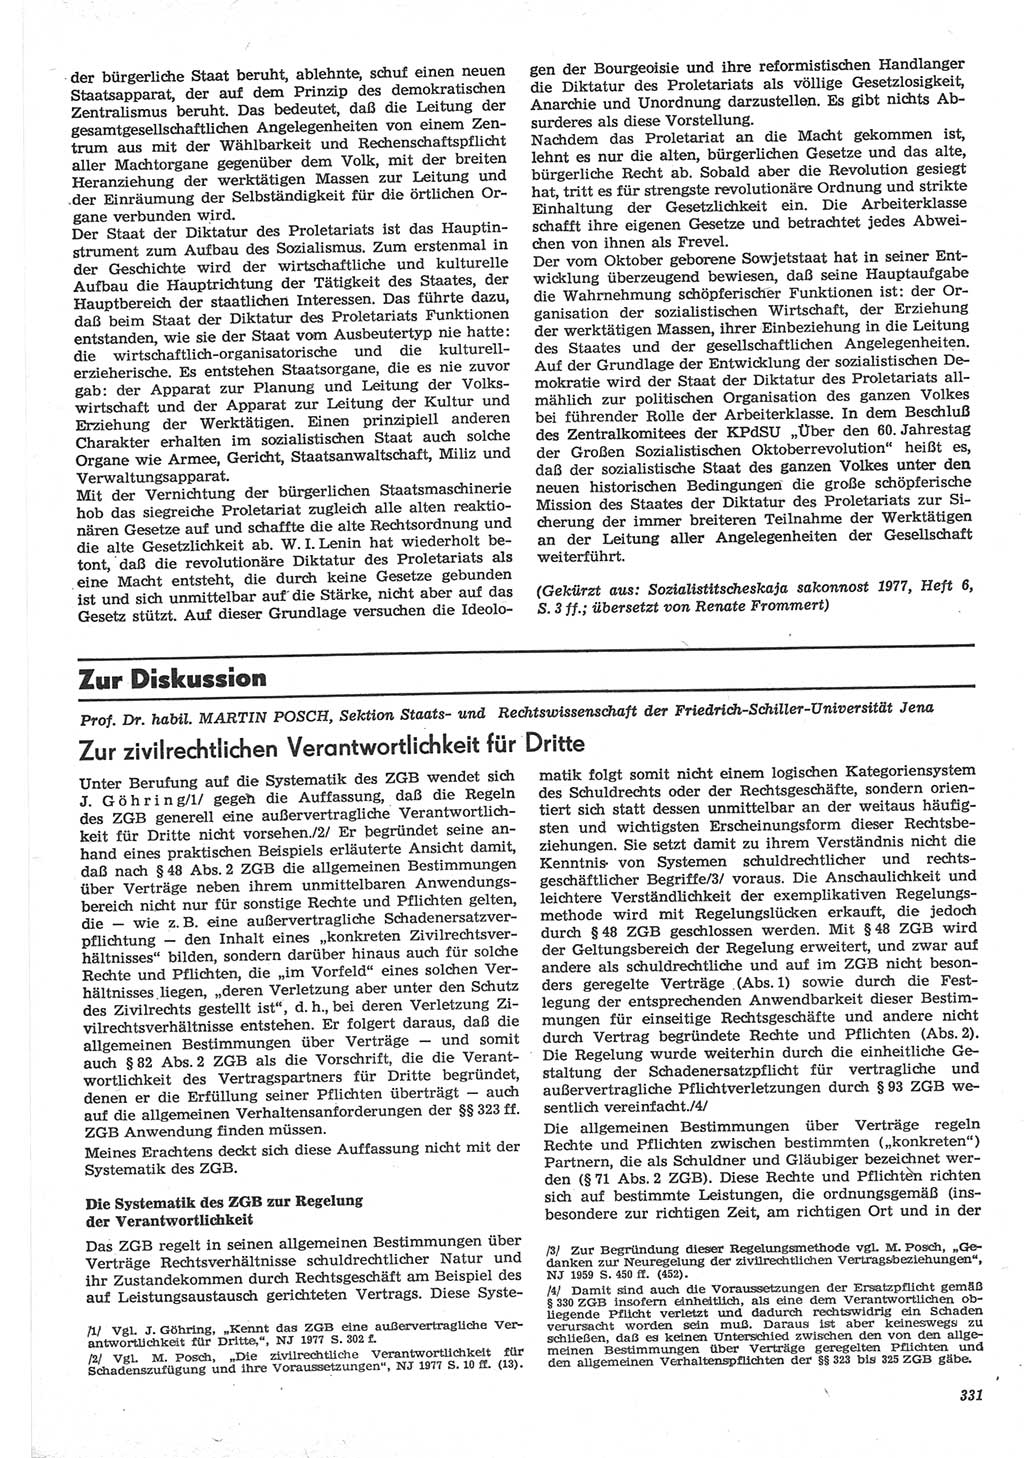 Neue Justiz (NJ), Zeitschrift für Recht und Rechtswissenschaft-Zeitschrift, sozialistisches Recht und Gesetzlichkeit, 31. Jahrgang 1977, Seite 331 (NJ DDR 1977, S. 331)